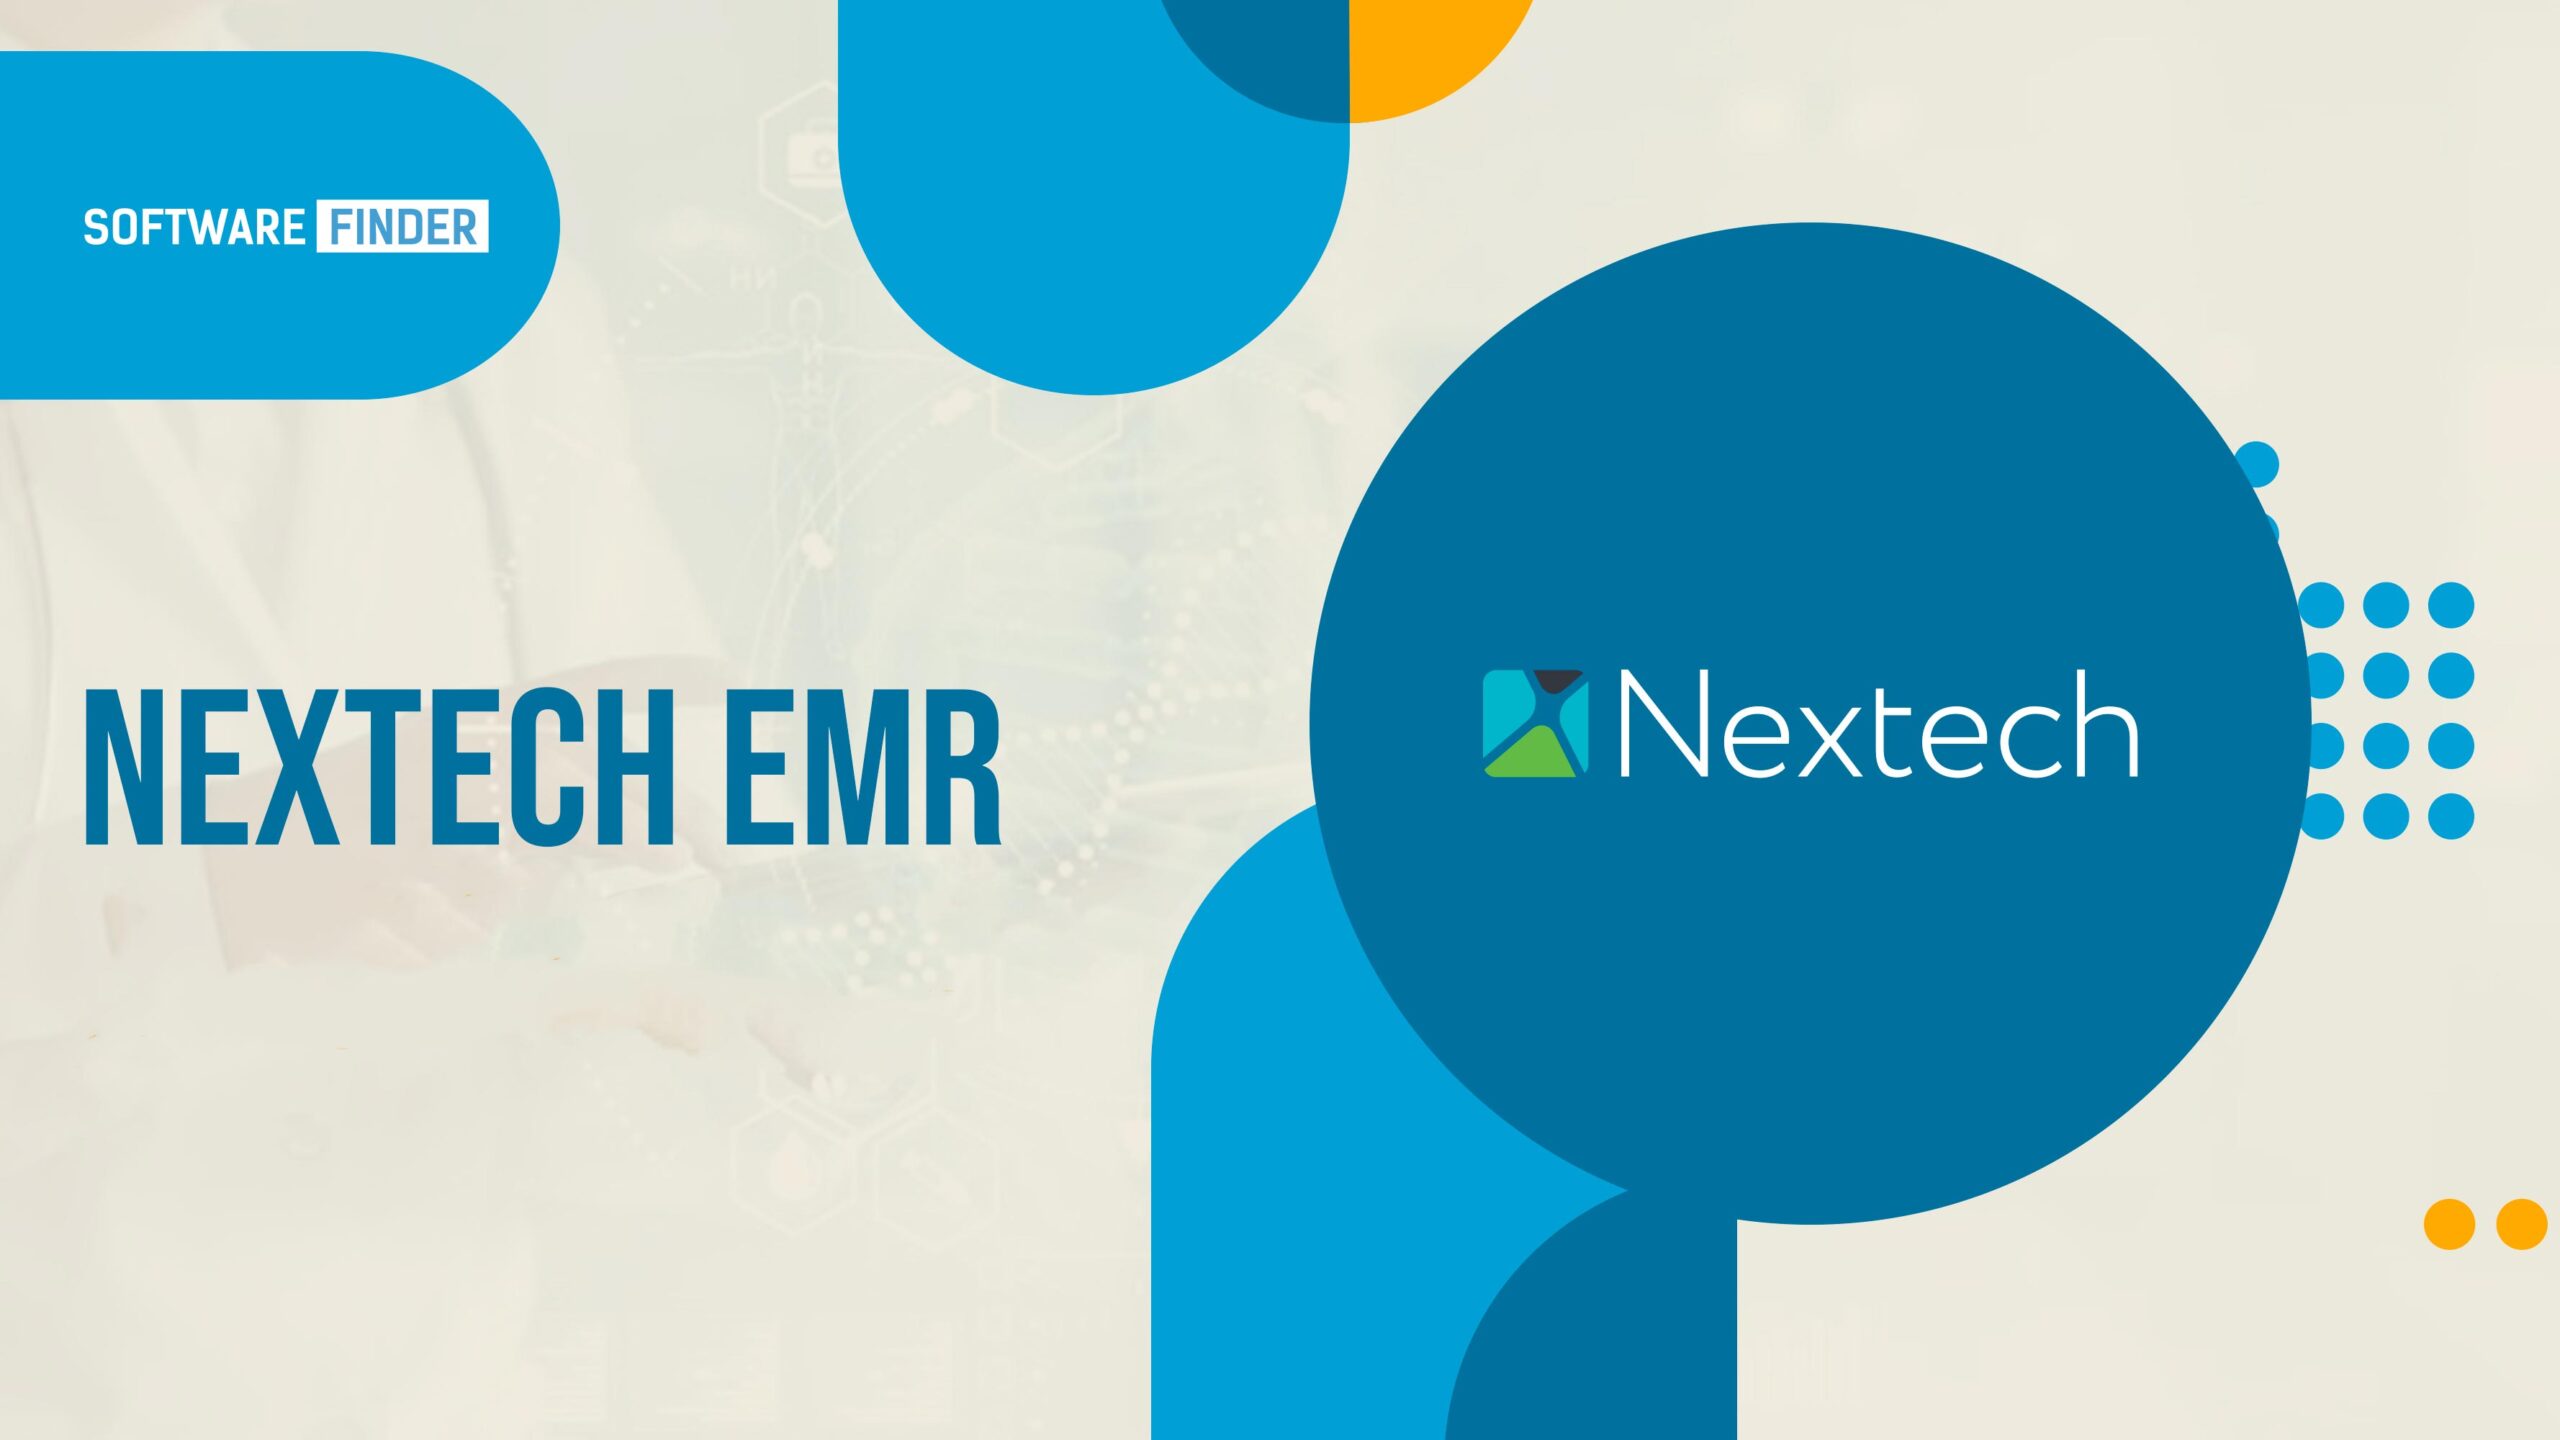 Nextech EMR Software